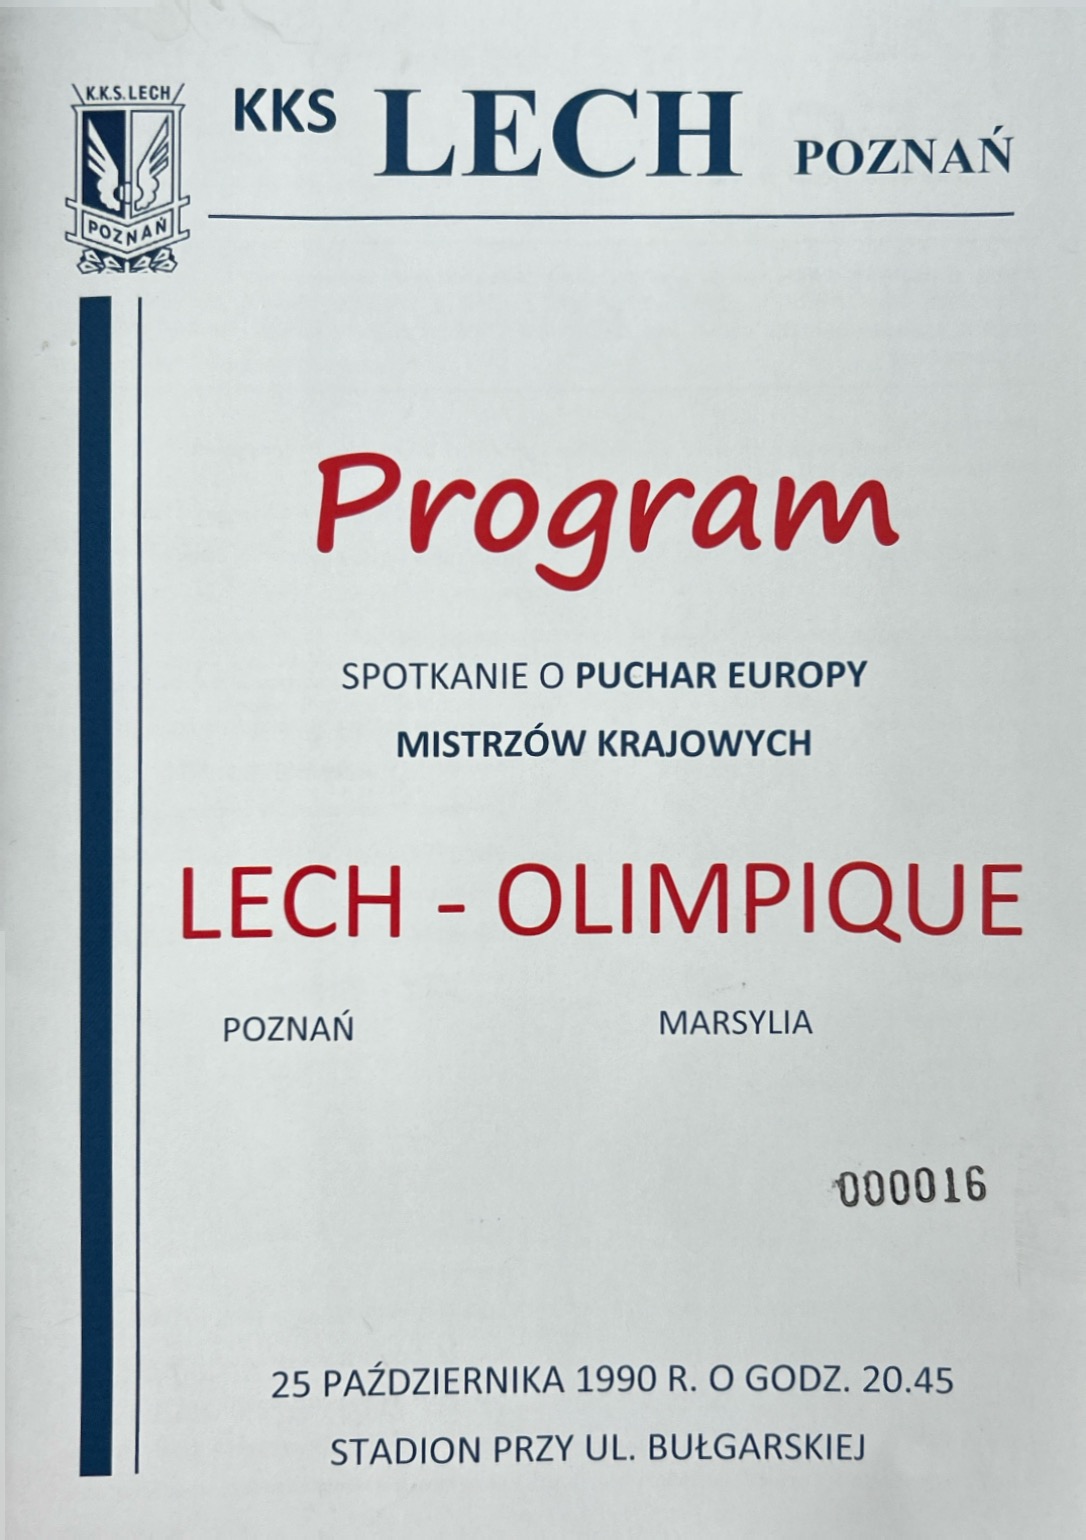 Program meczowy Lech Poznań - Olympique Marsylia 3:2 (25.10.1990)